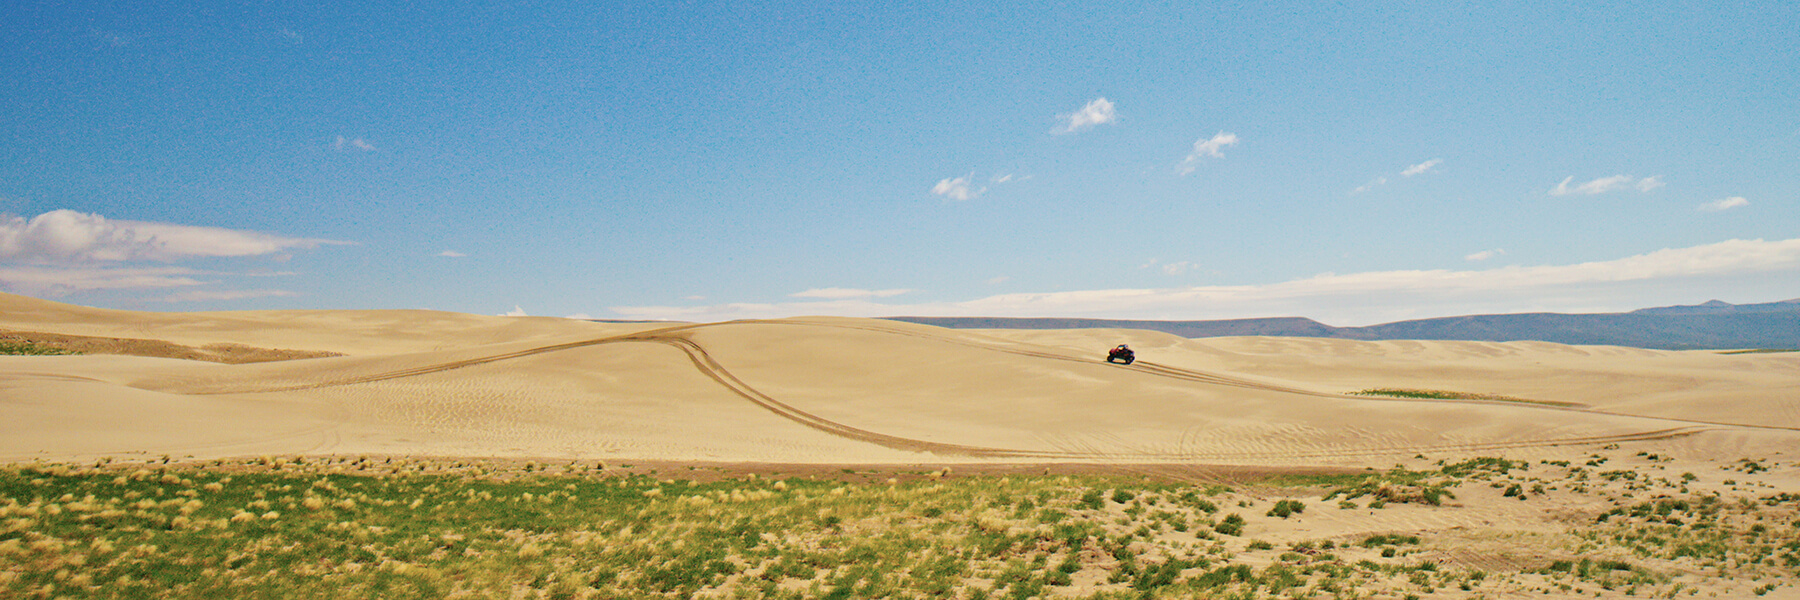 Killpecker Sand Dunes in Southwest Wyoming